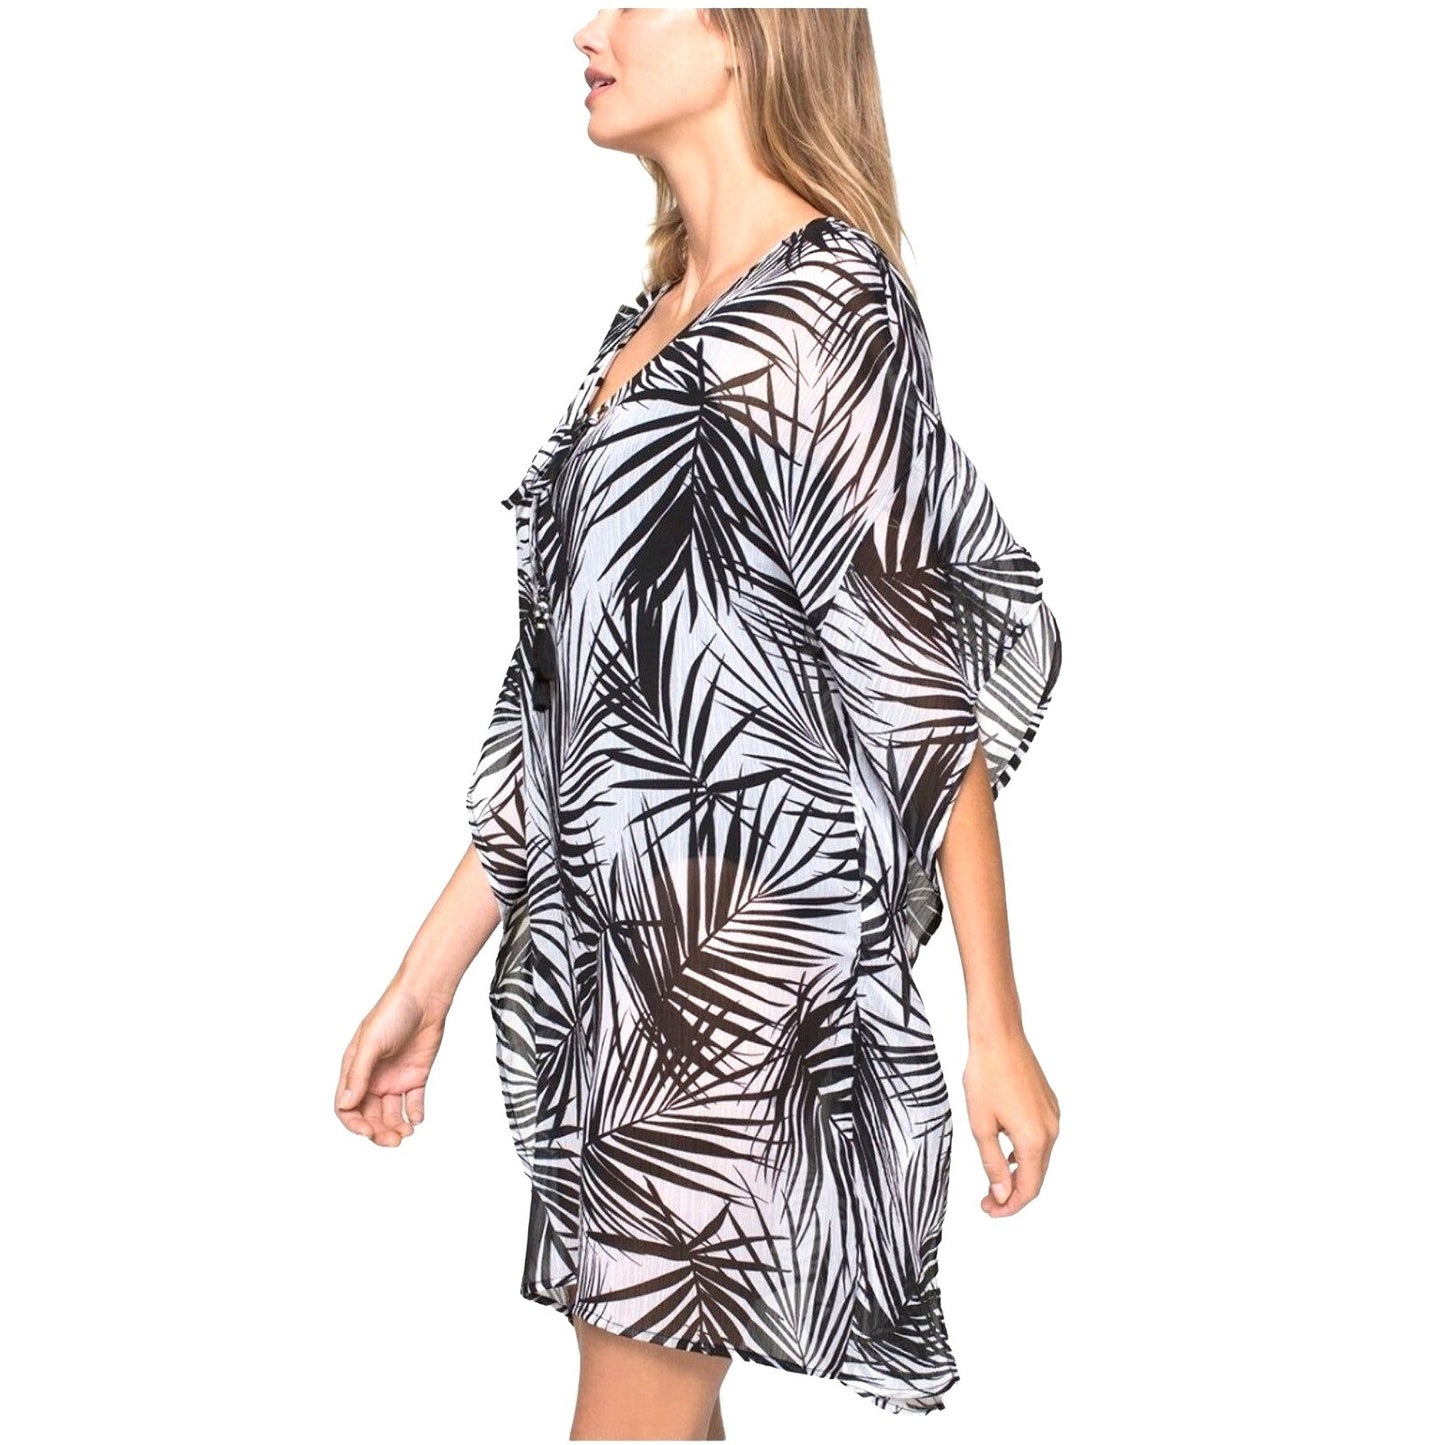 DOTTI Cover-up Paradise Palms Chiffon Grommet Tunic Swimwear Coverup dress